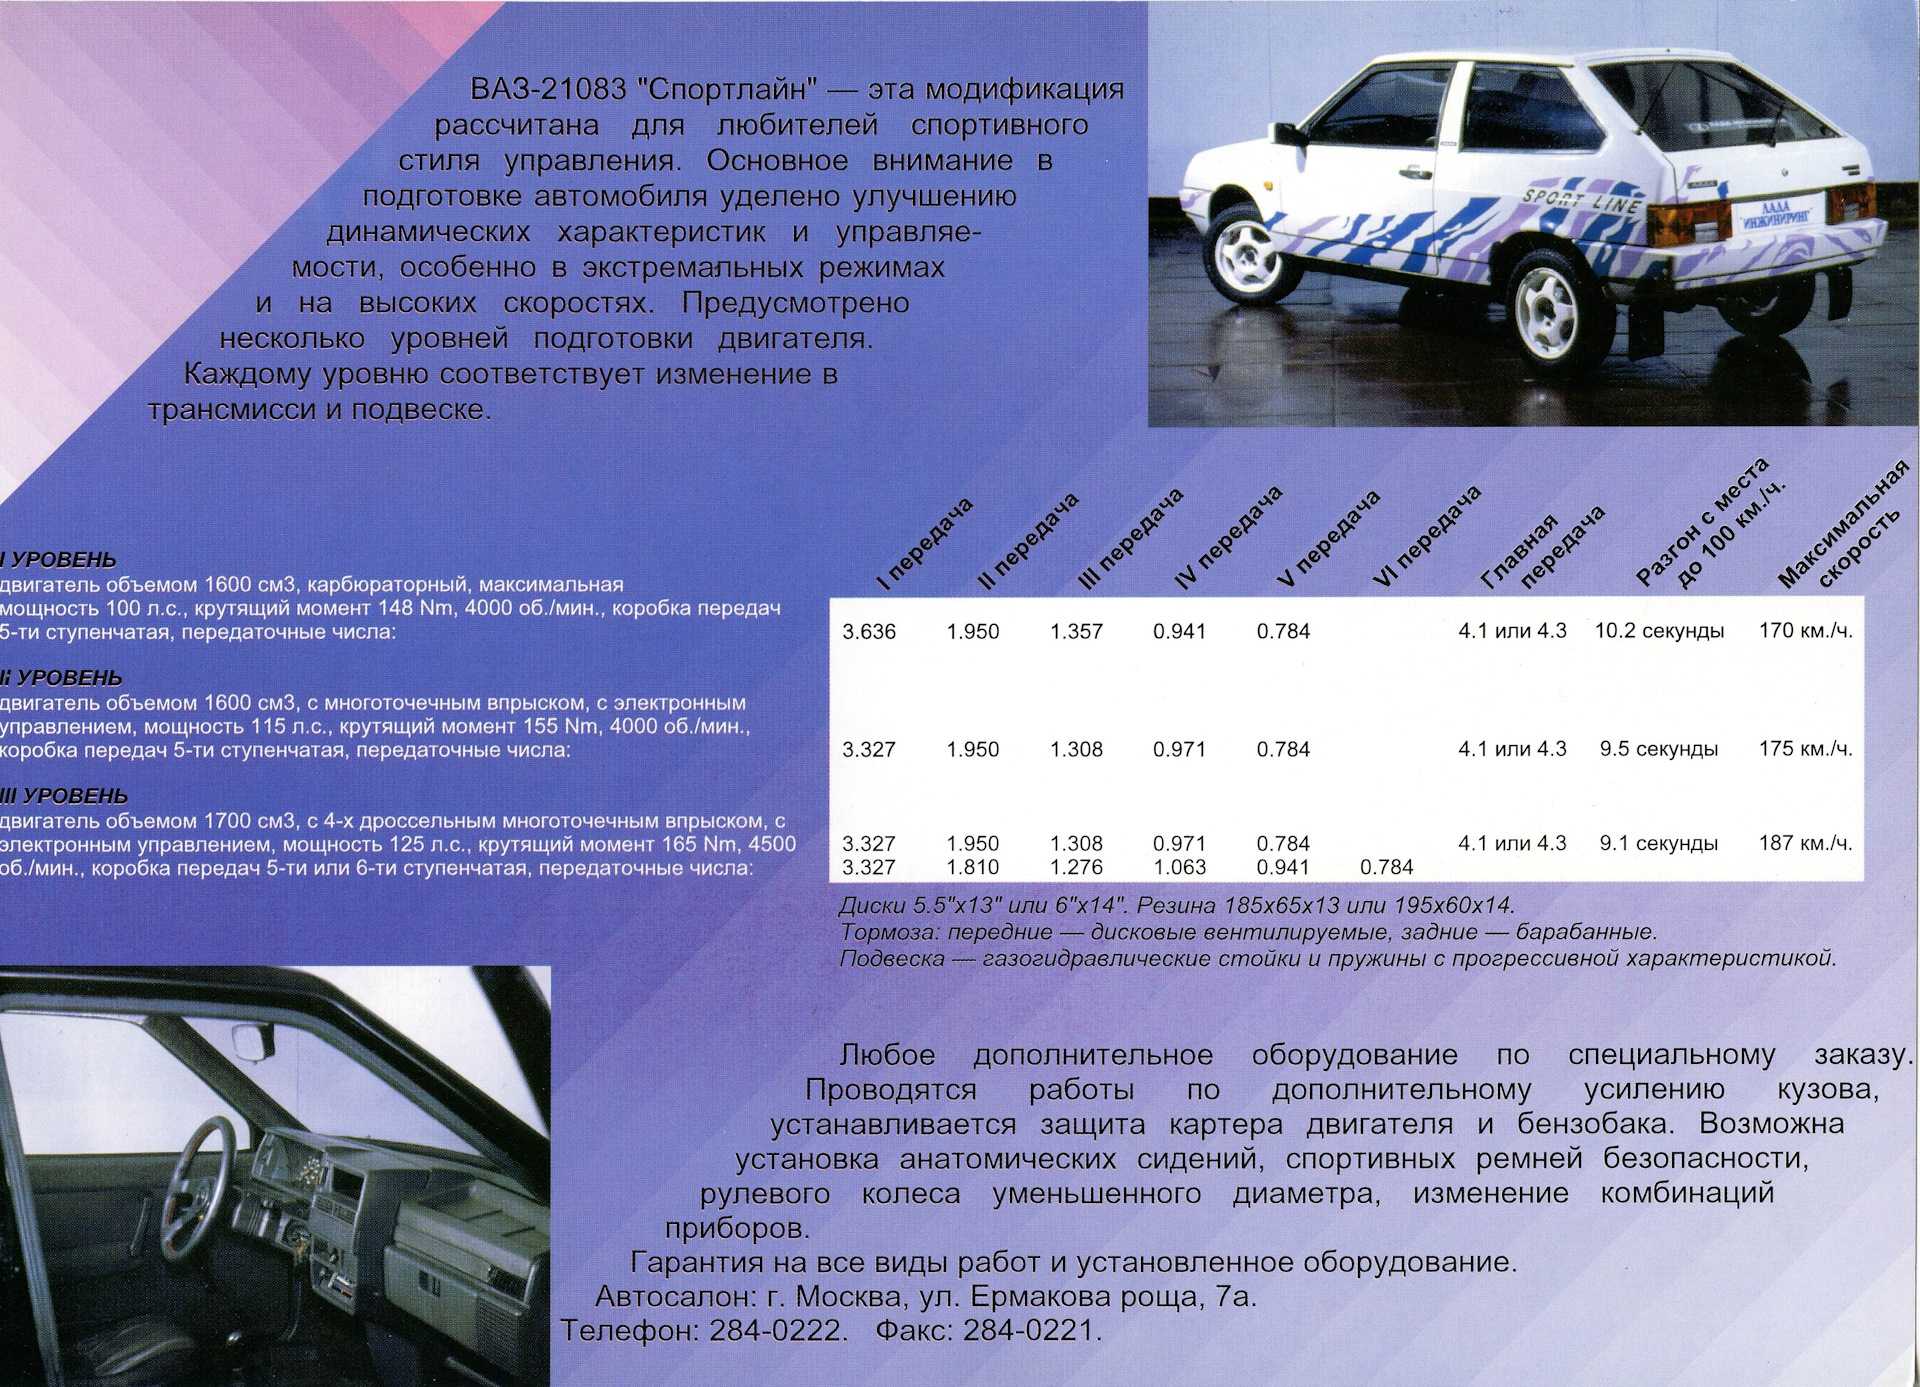 Ваз 21083 (c 1984 по 2003) — технические характеристики автомобиля